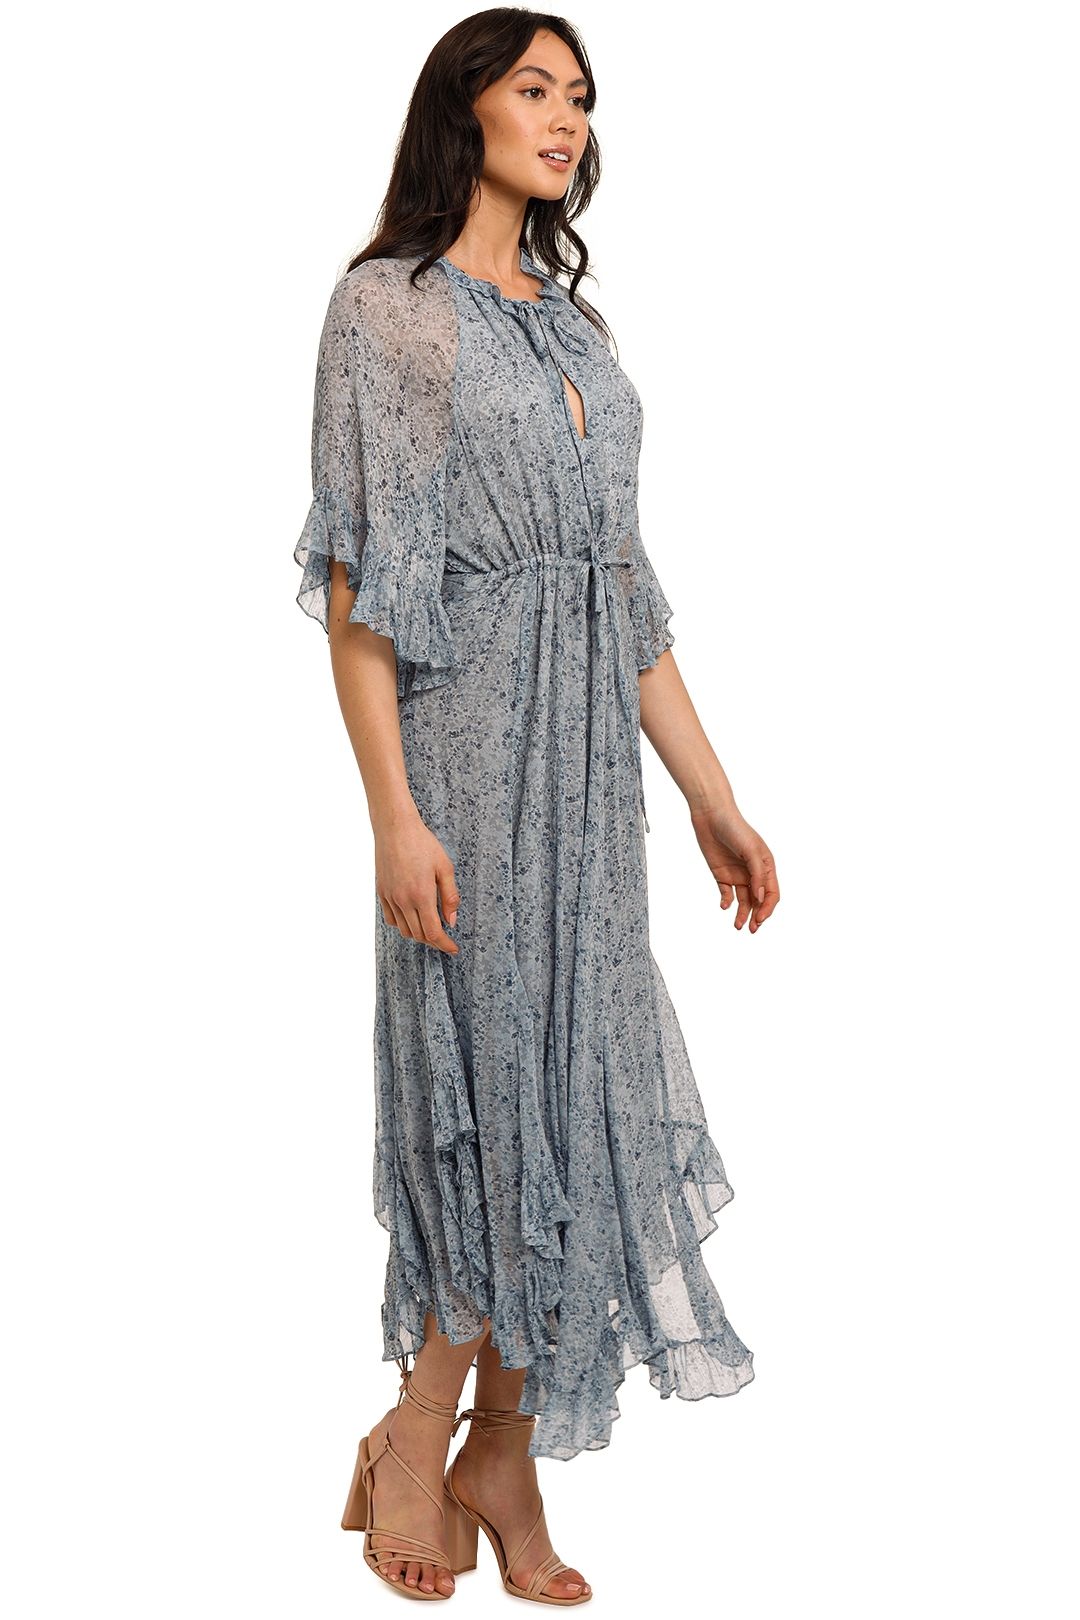 Shona Joy Harmony Flutter Sleeve Midi Dress Ruffle